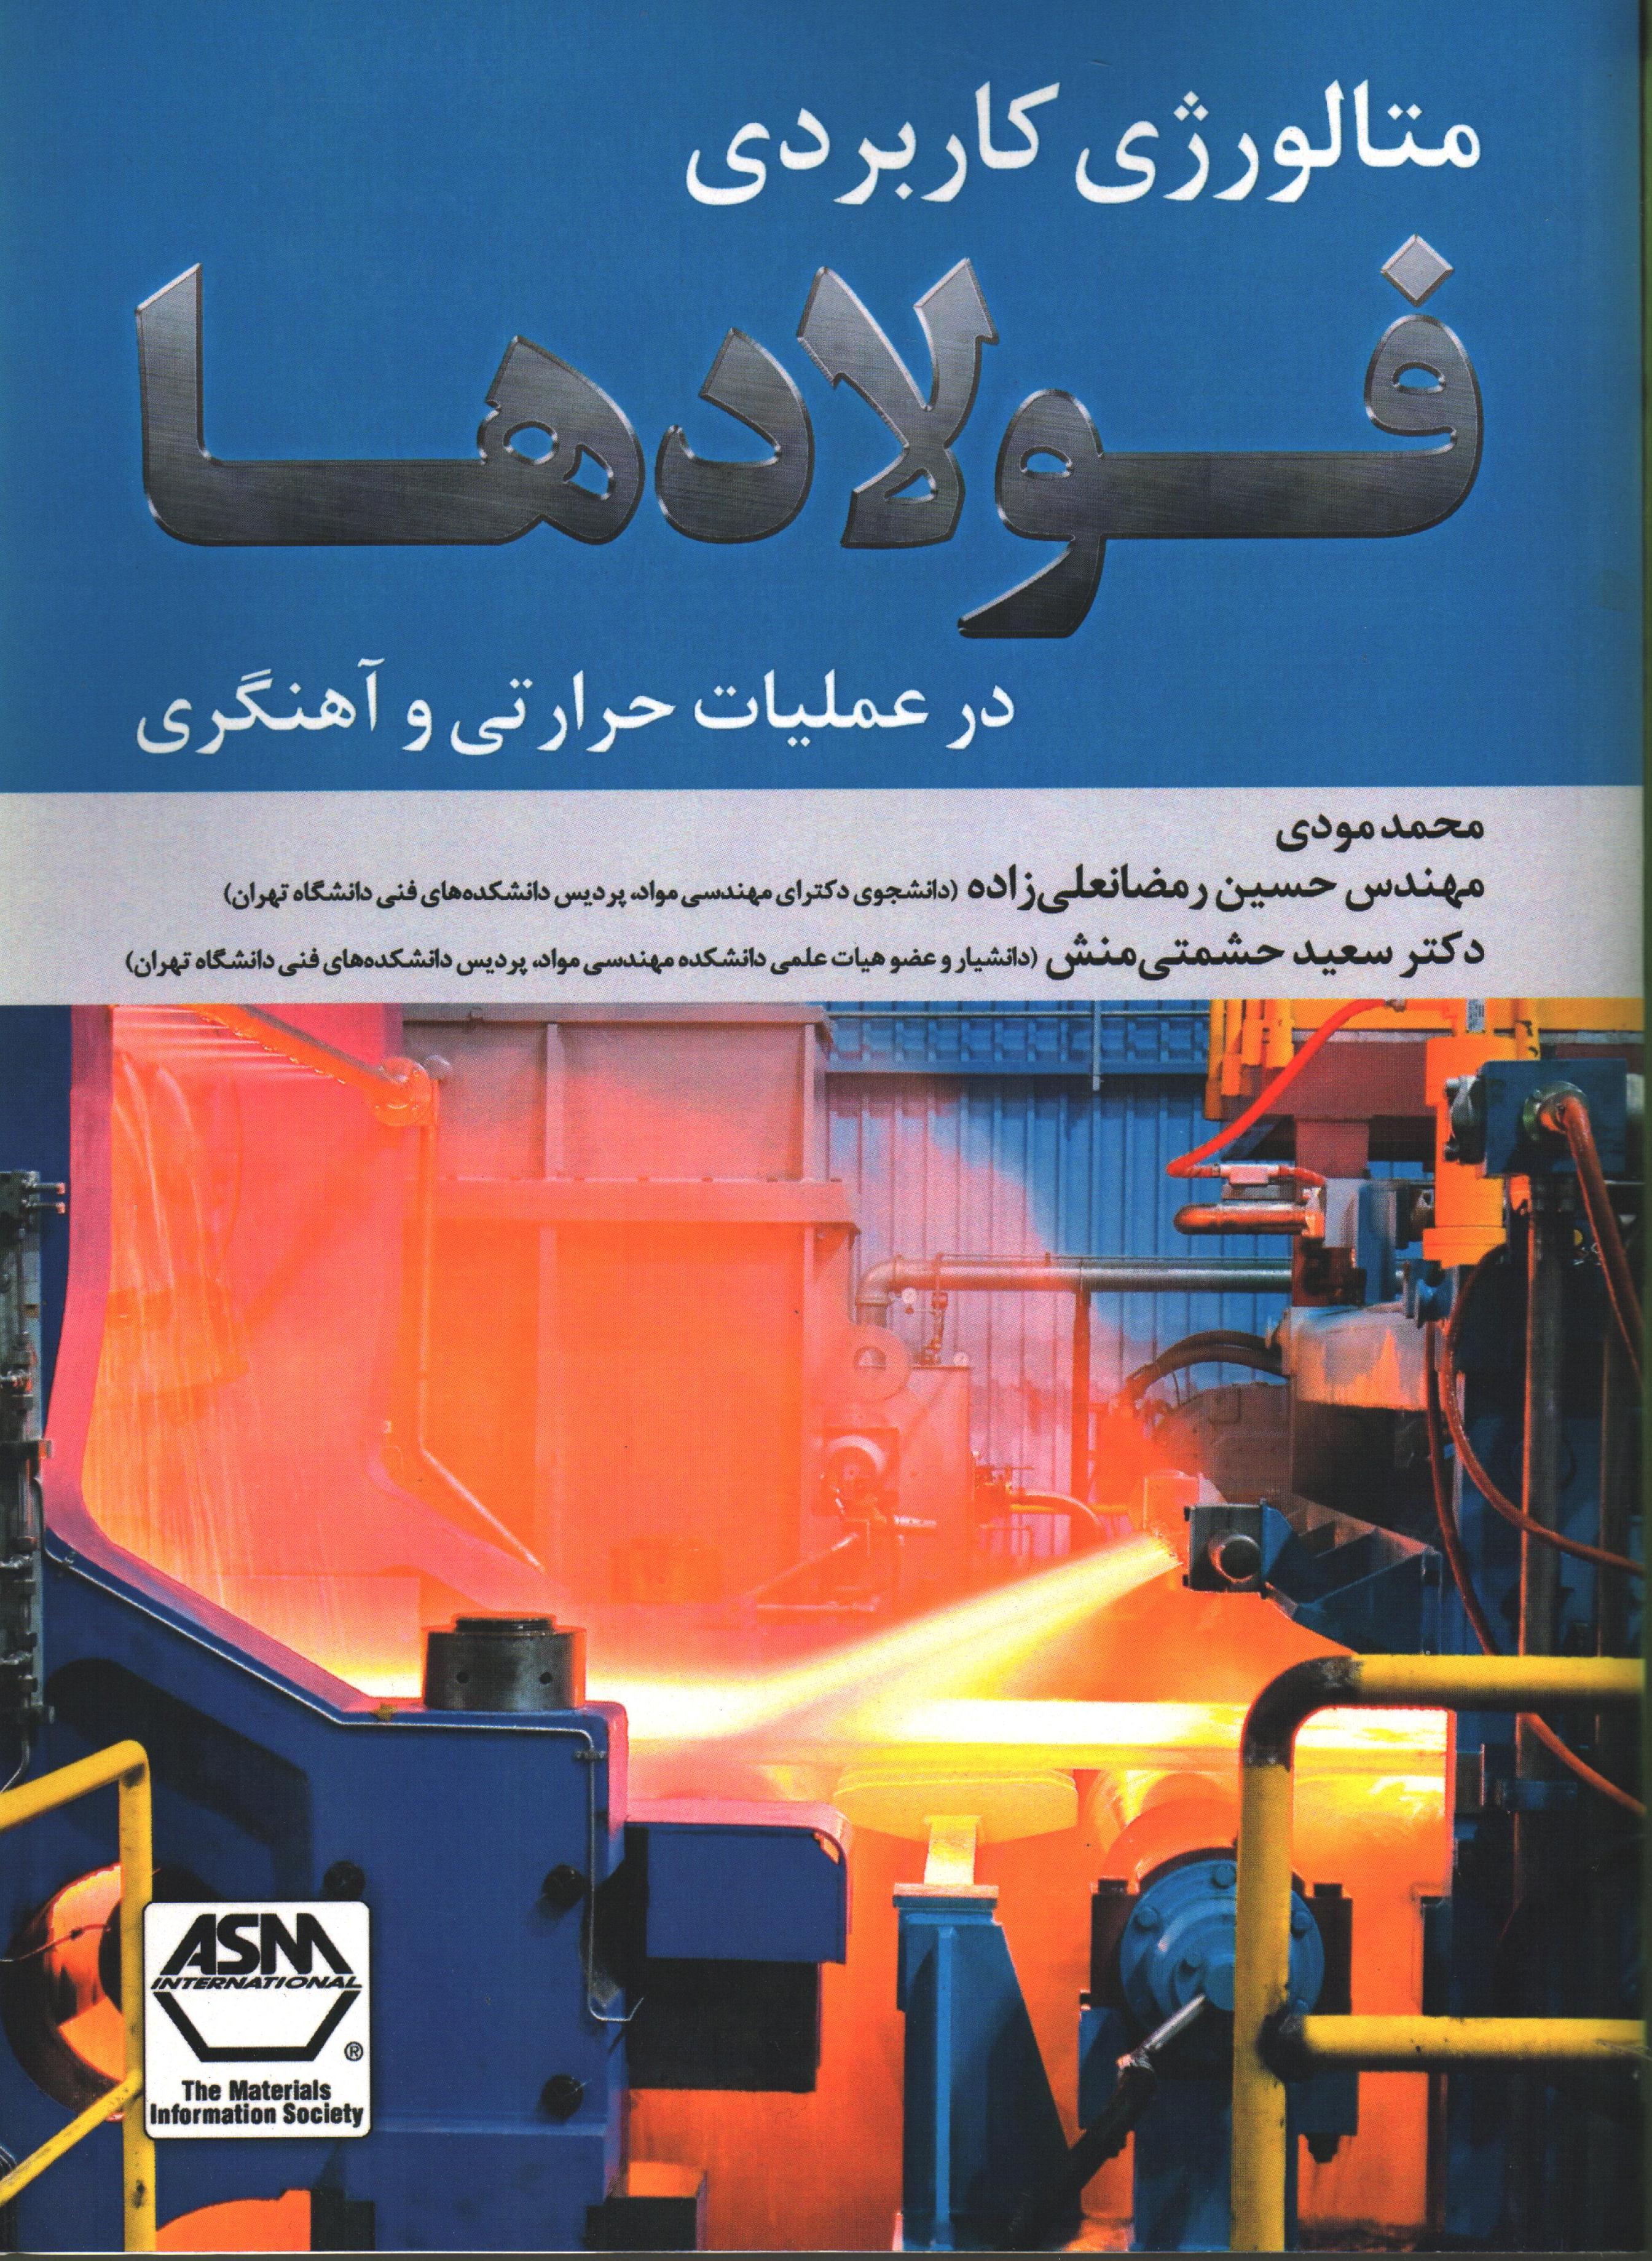 متالورژی کاربردی فولادها در عملیات حرارتی و آهنگری